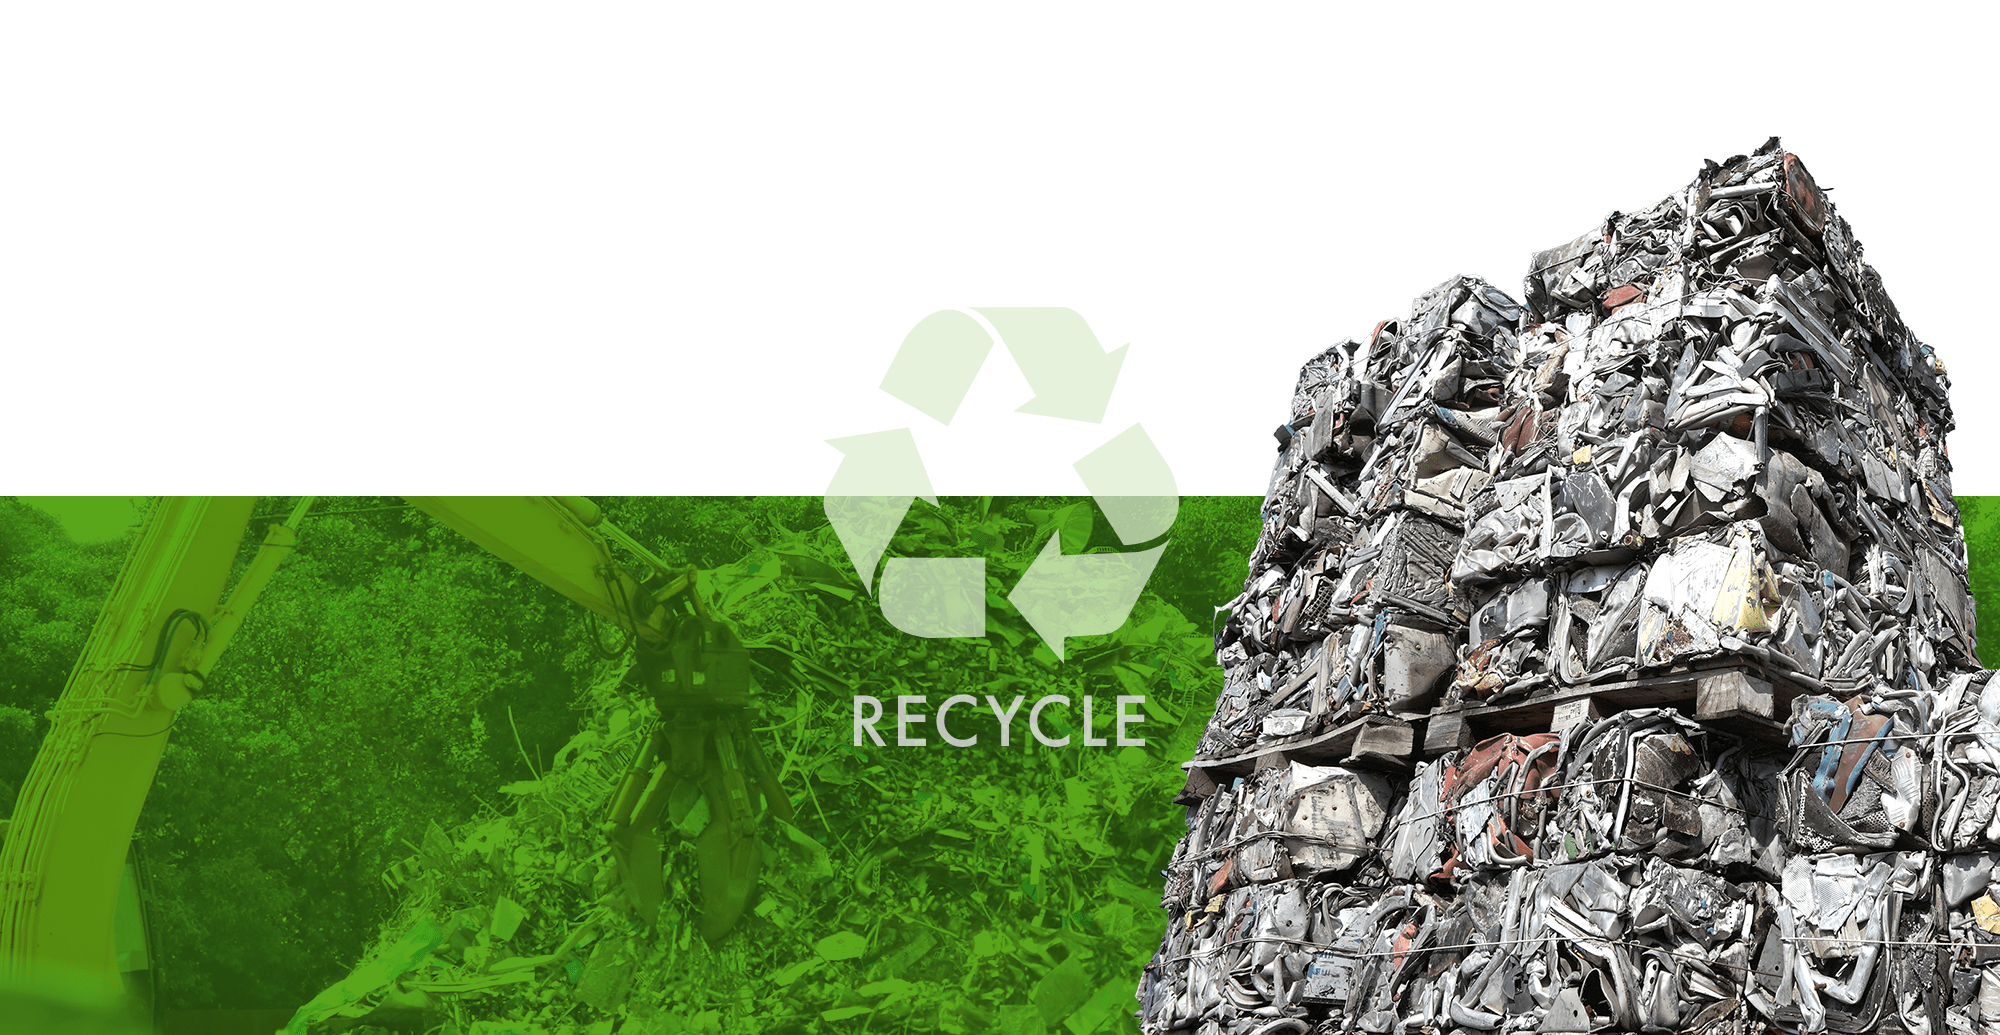 株式会社星輝産業 リサイクルを通じて、環境に優しいエコな社会づくりに貢献します